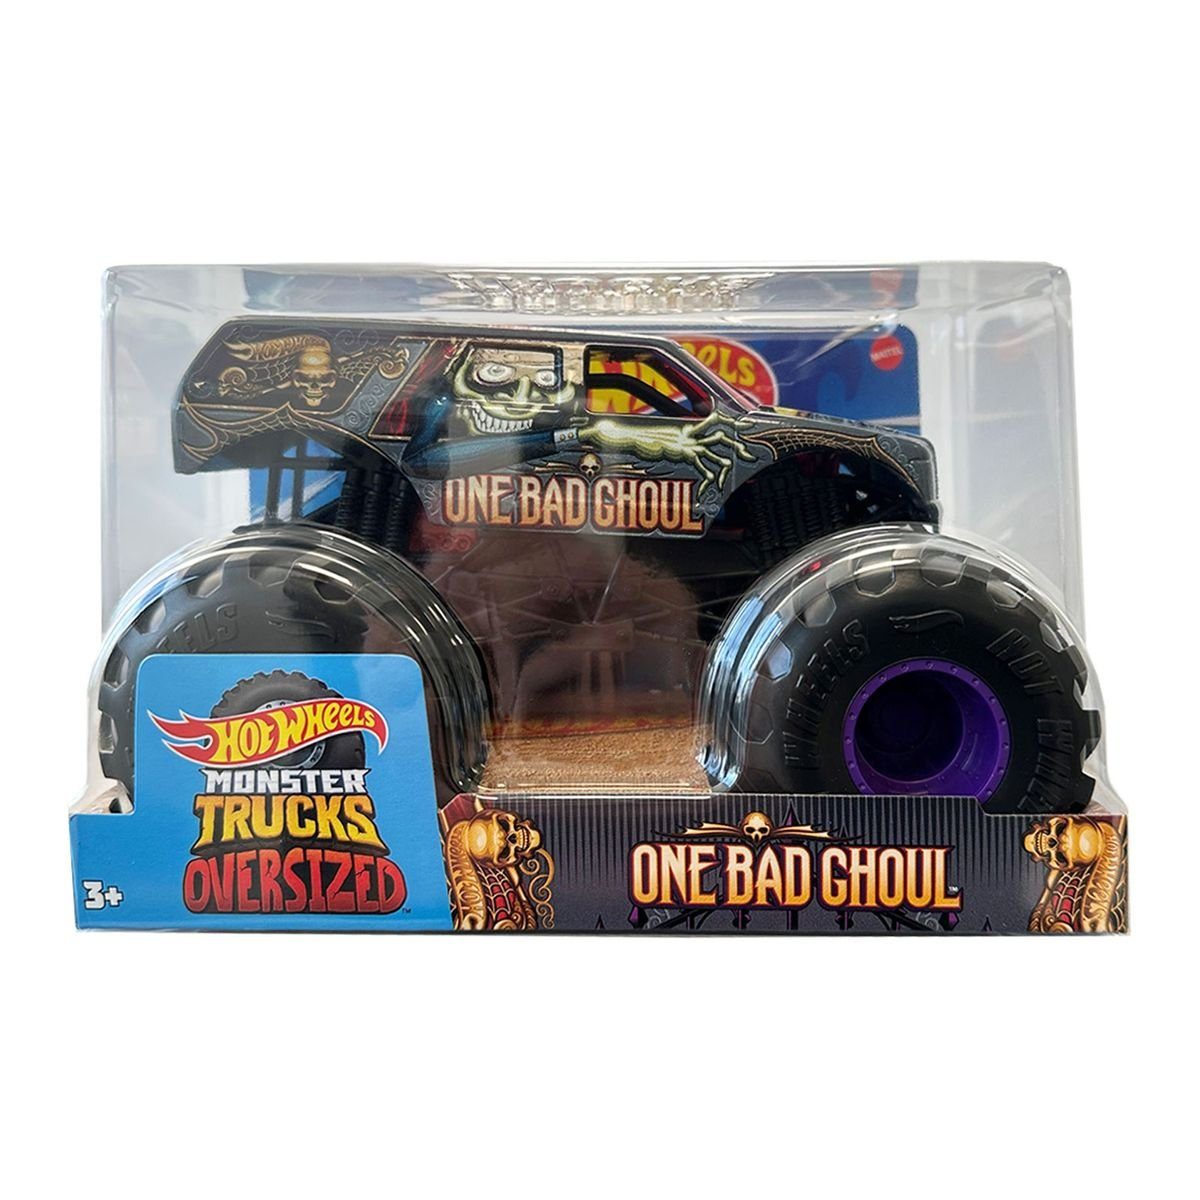 Mattel® Spielzeug-Monstertruck Mattel HWG80 - Hot Wheels - Monster Tucks Oversized - One Bad Ghoul